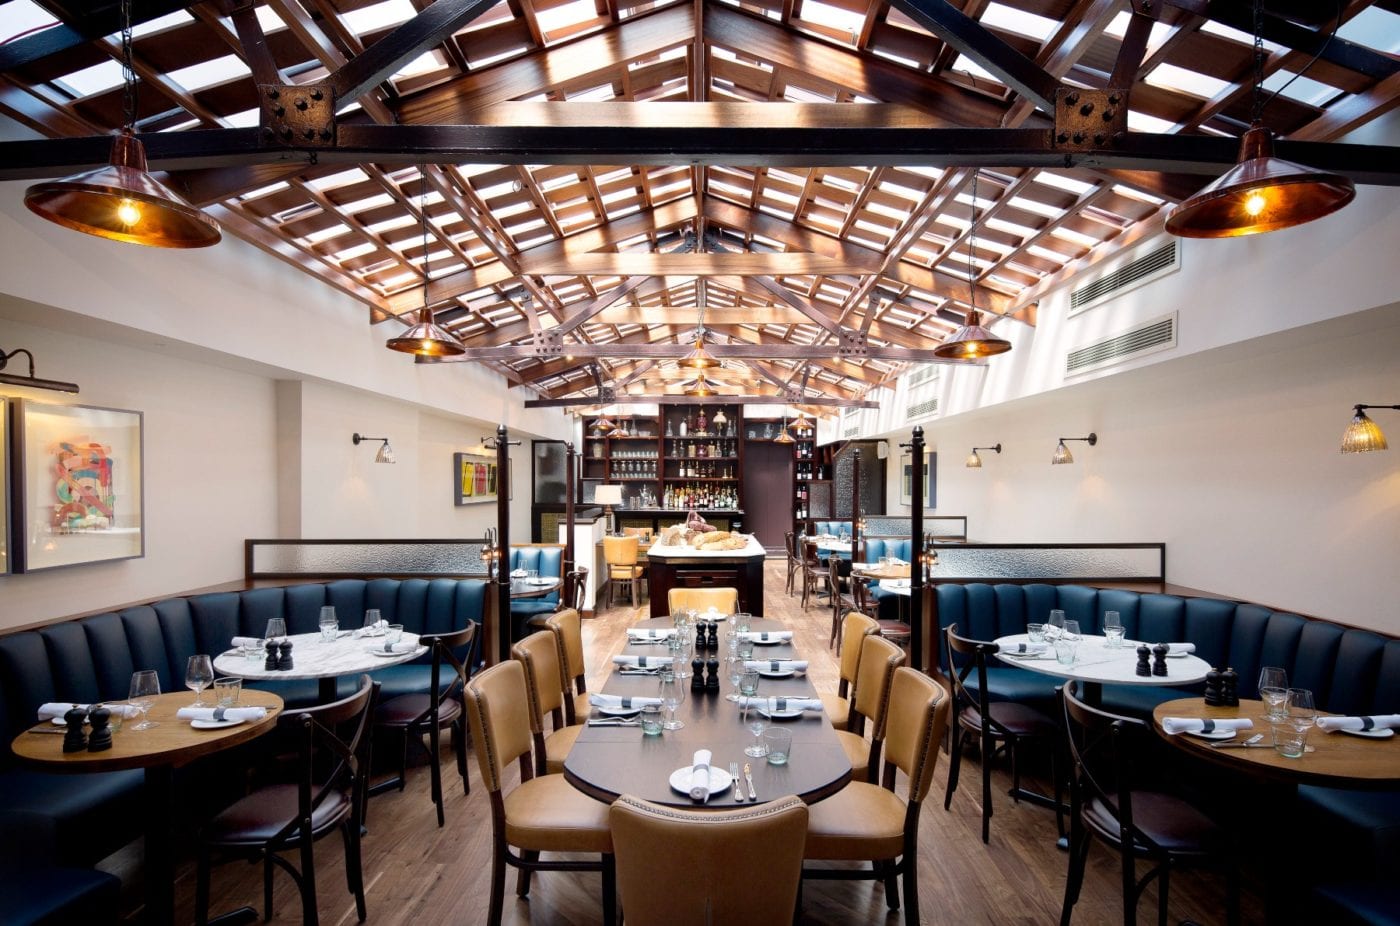 Italian Restaurant in Covent Garden - Angela Hartnett’s Cafe Murano